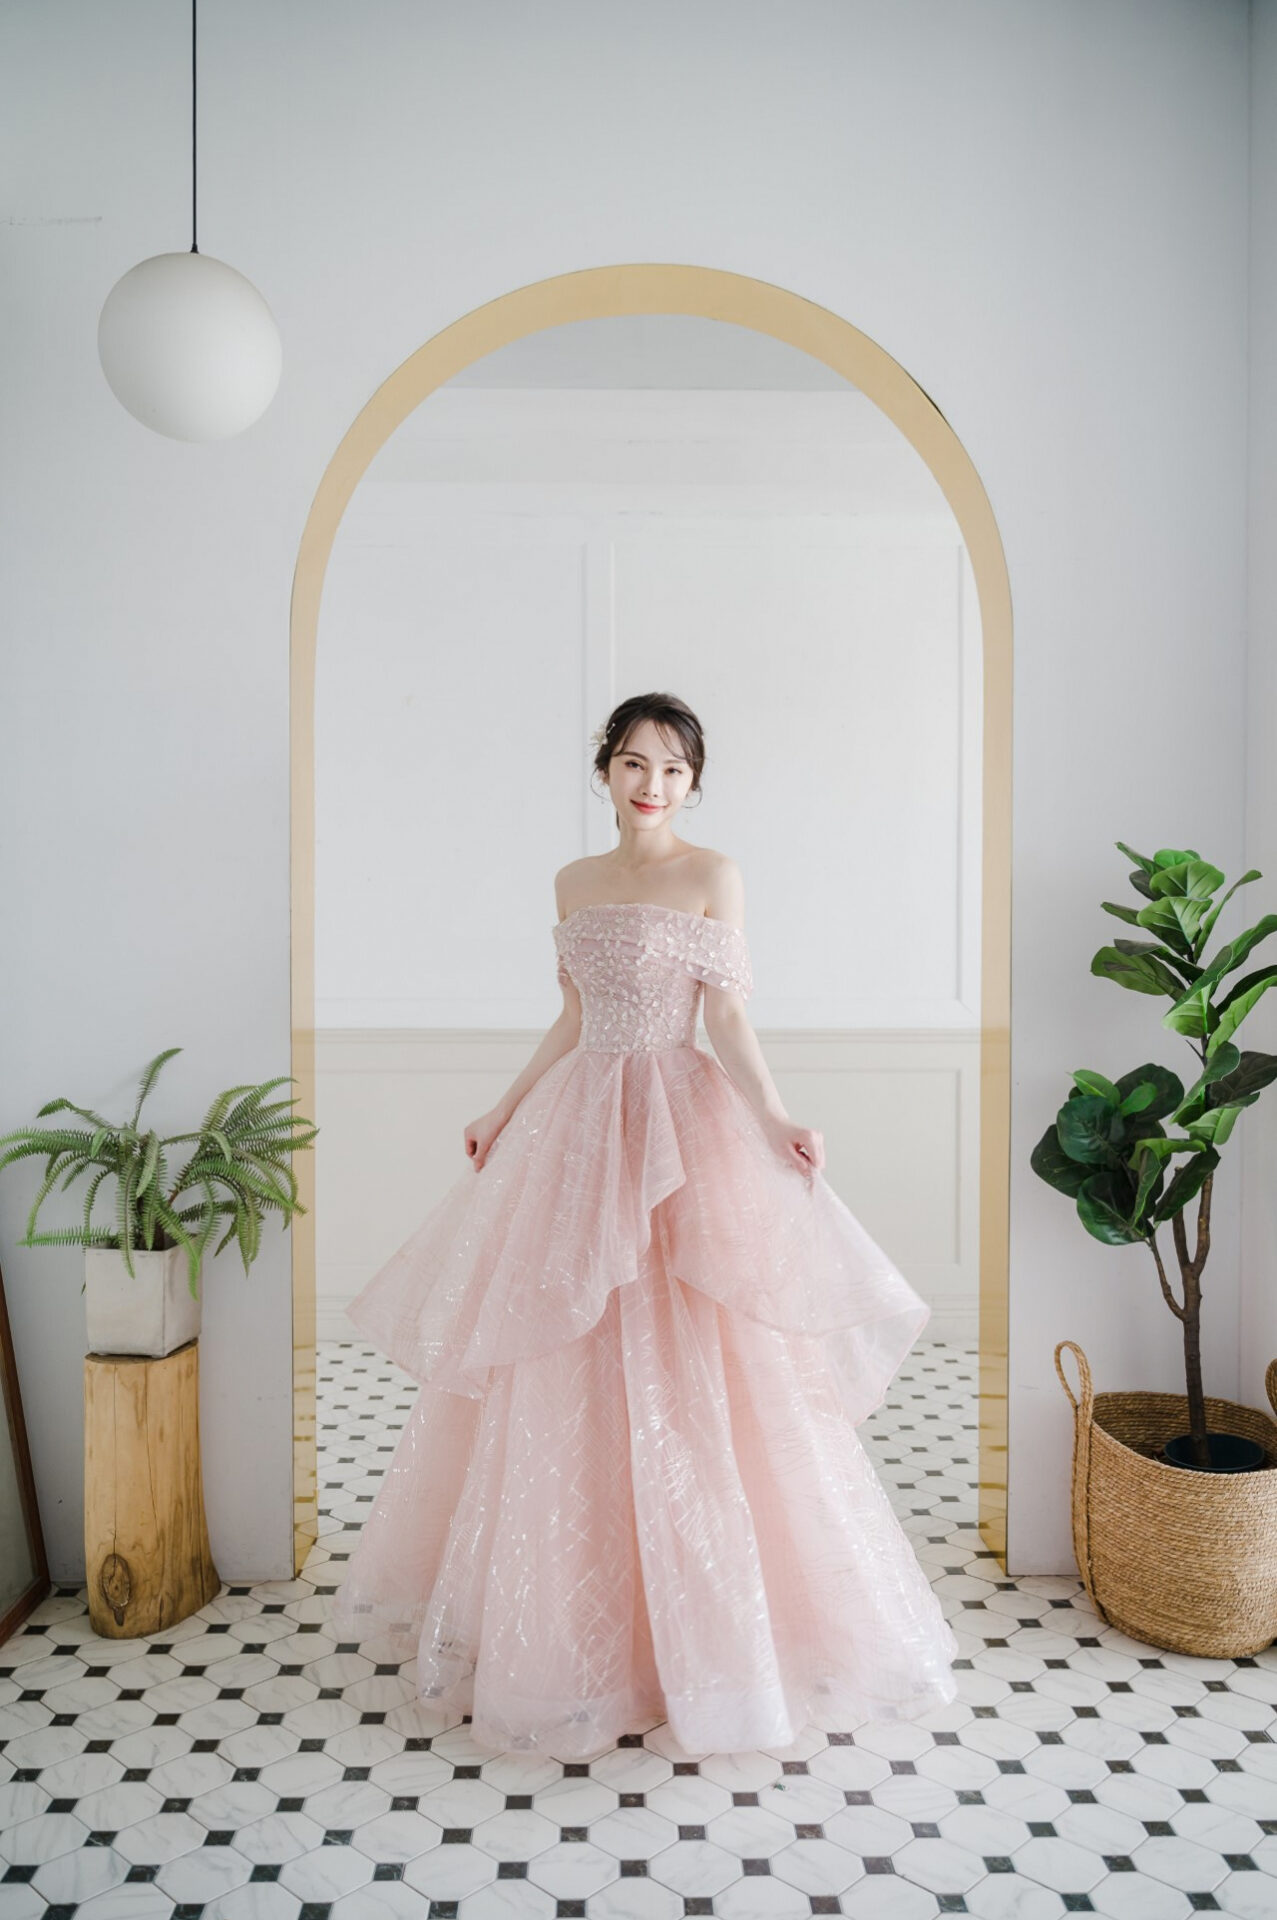 台北婚紗禮服工作室,ariesy愛瑞思婚紗,粉色甜美禮服,尾牙宴會禮服